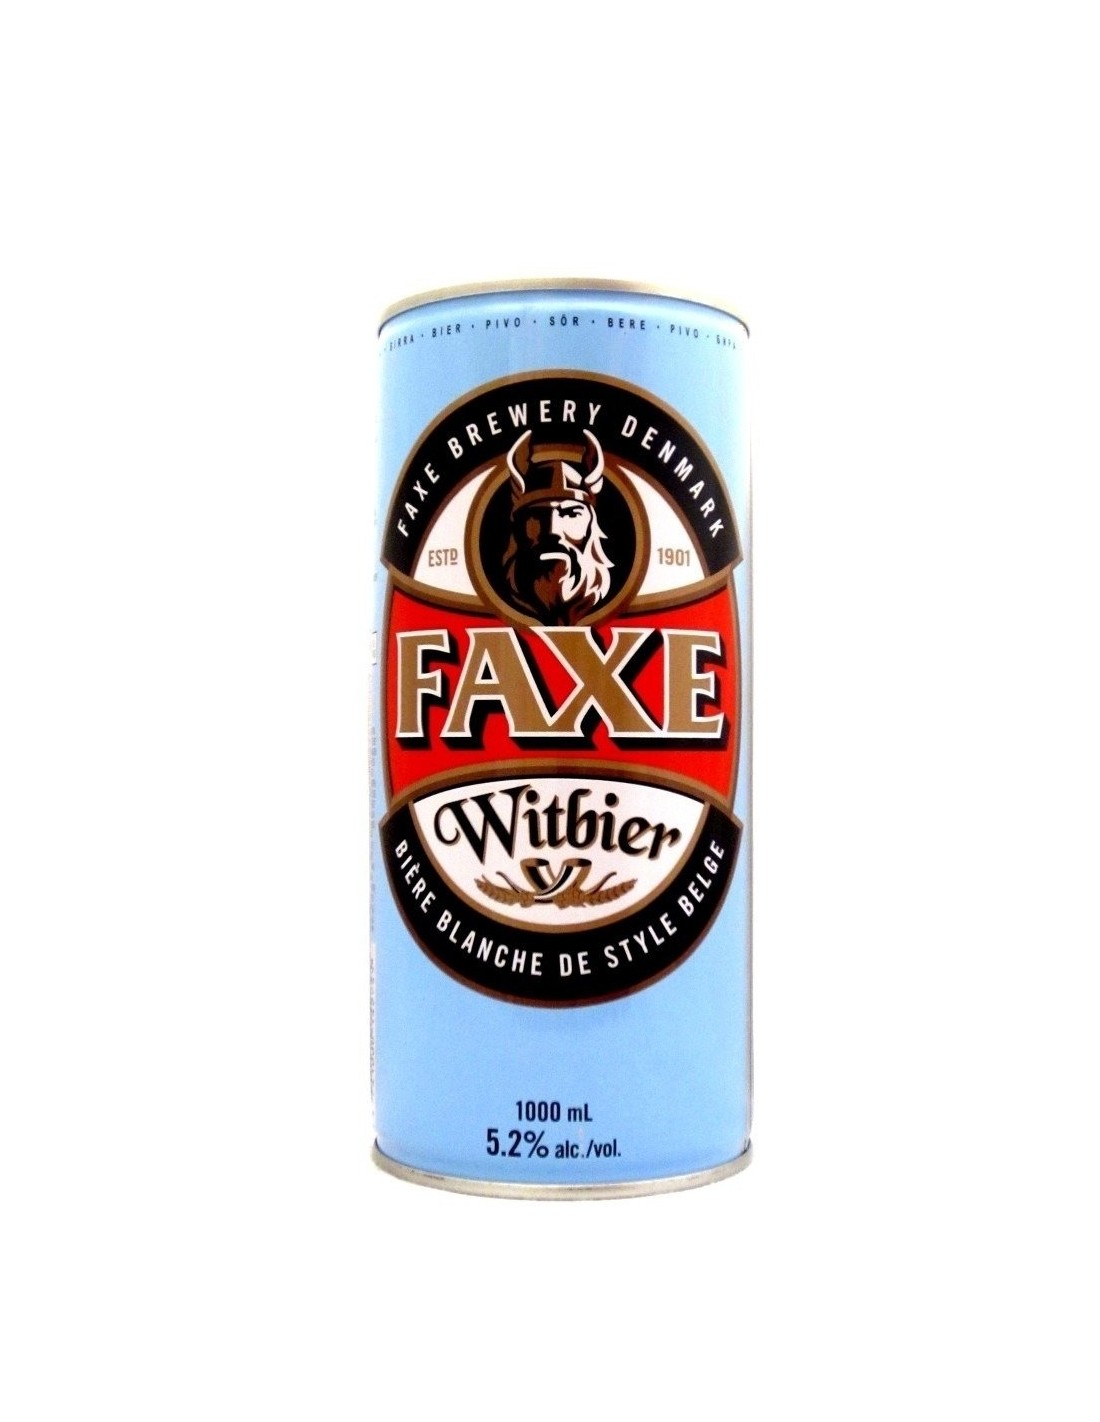 Bere alba, nefiltrata Faxe Witbier, 5.2% alc., 1L, Danemarca